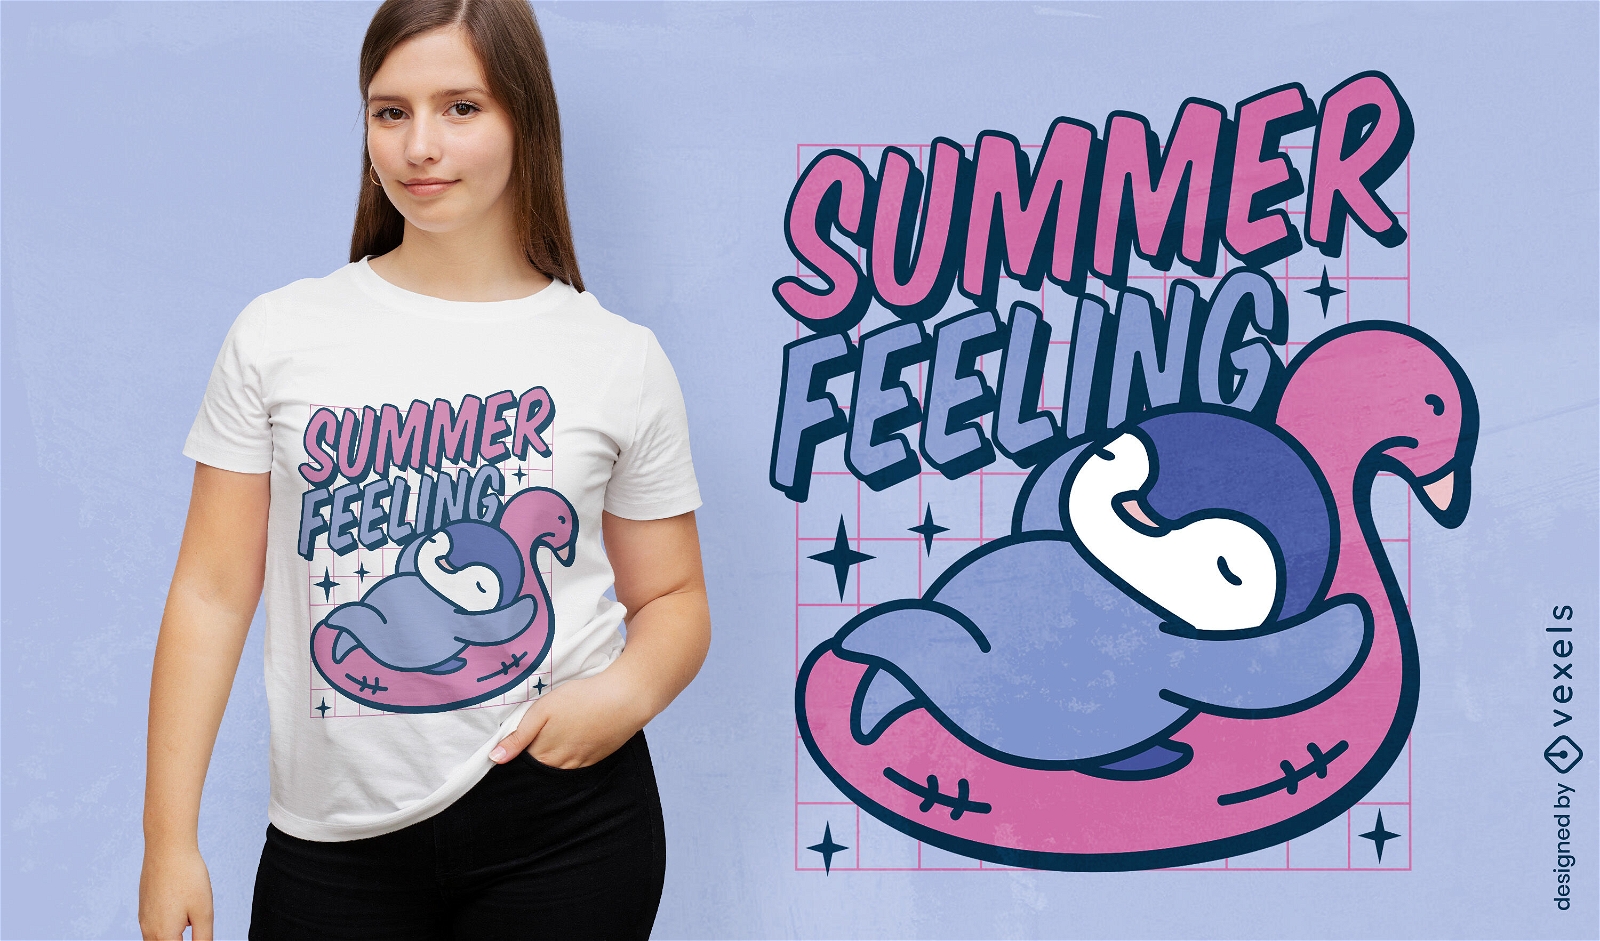 Summer feeling penguin t-shirt design